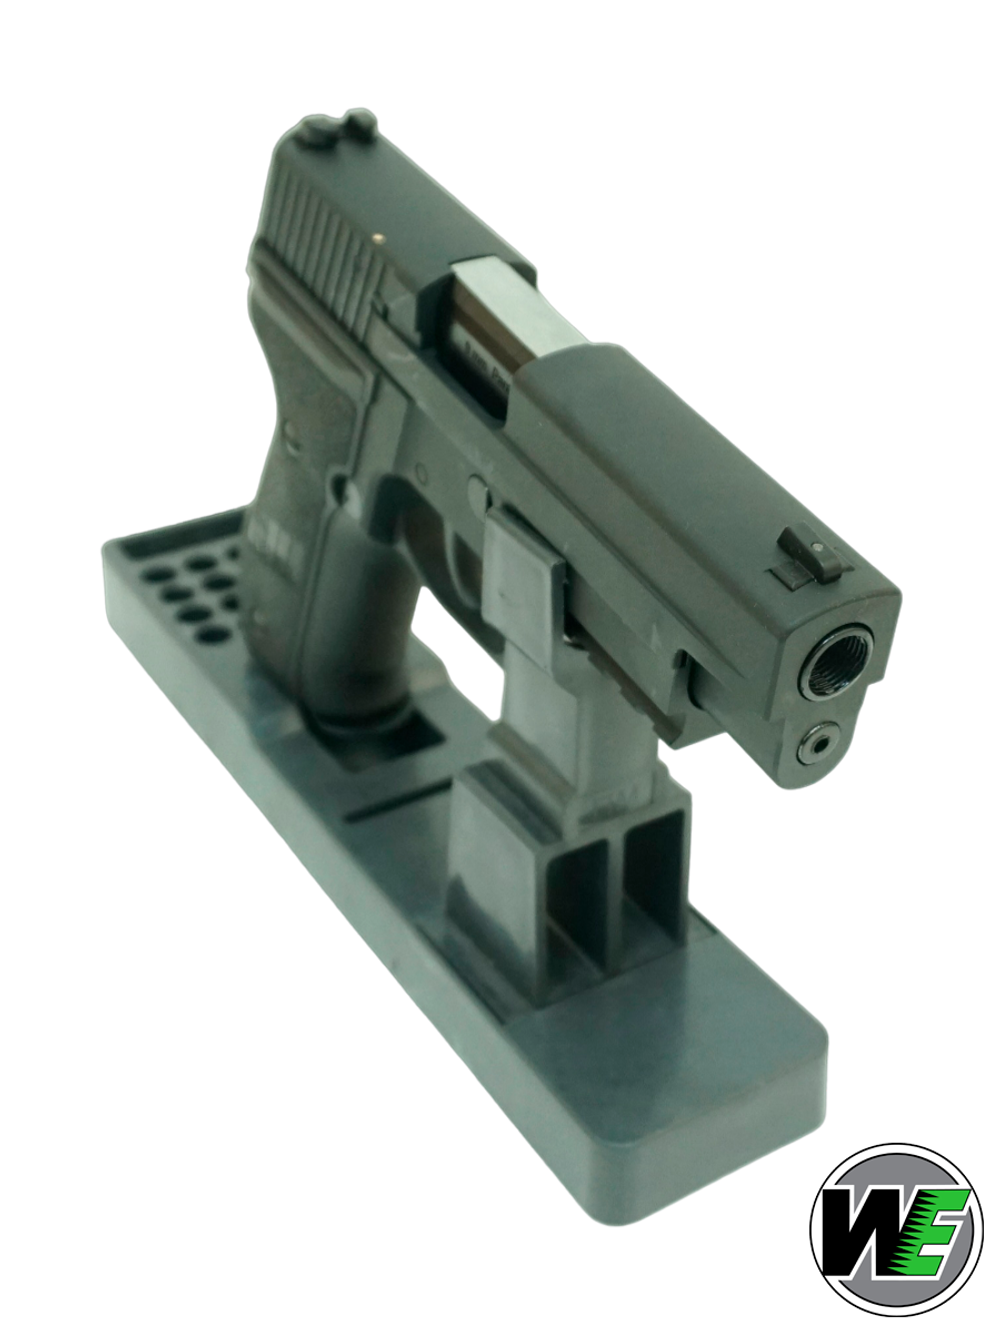 Пистолет страйкбольный WE SIG Sauer P226 Mk.25 (WE-F003-BK). Black